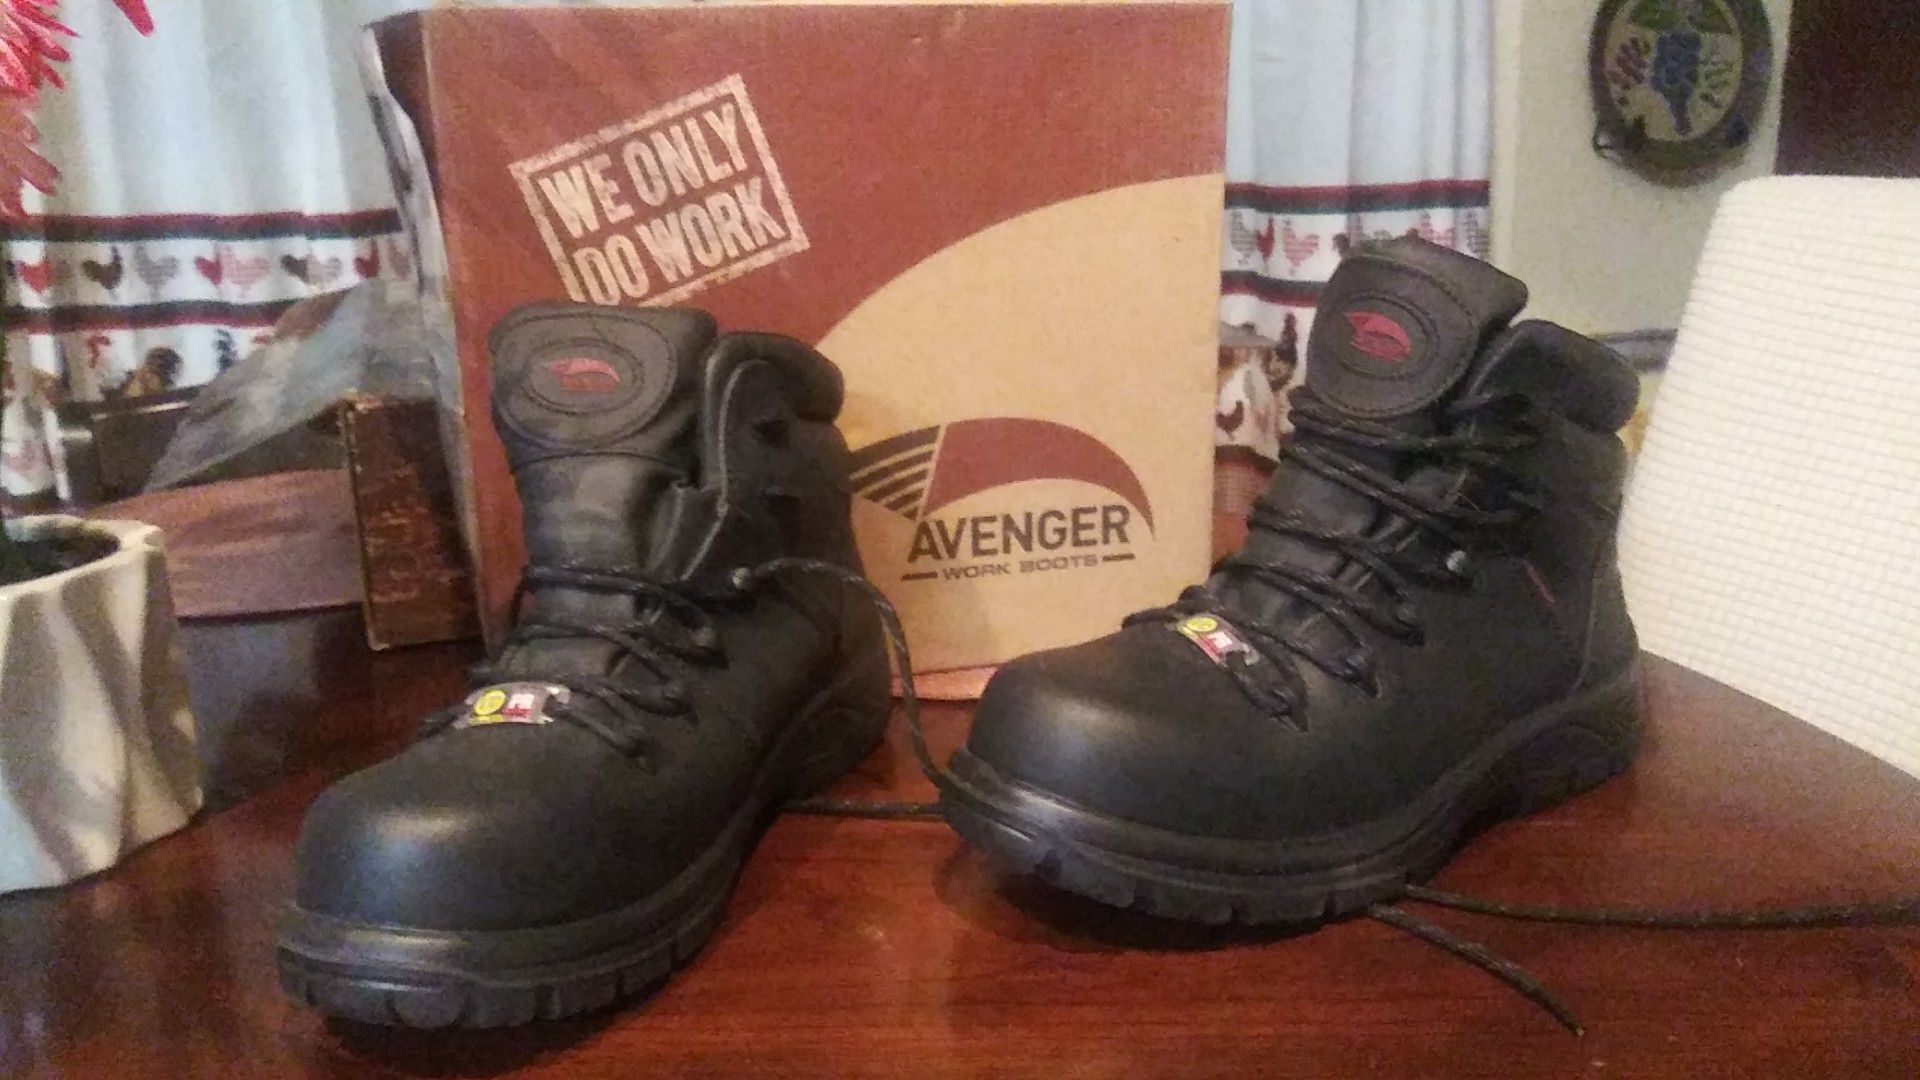 Avenger work Boots 8.5